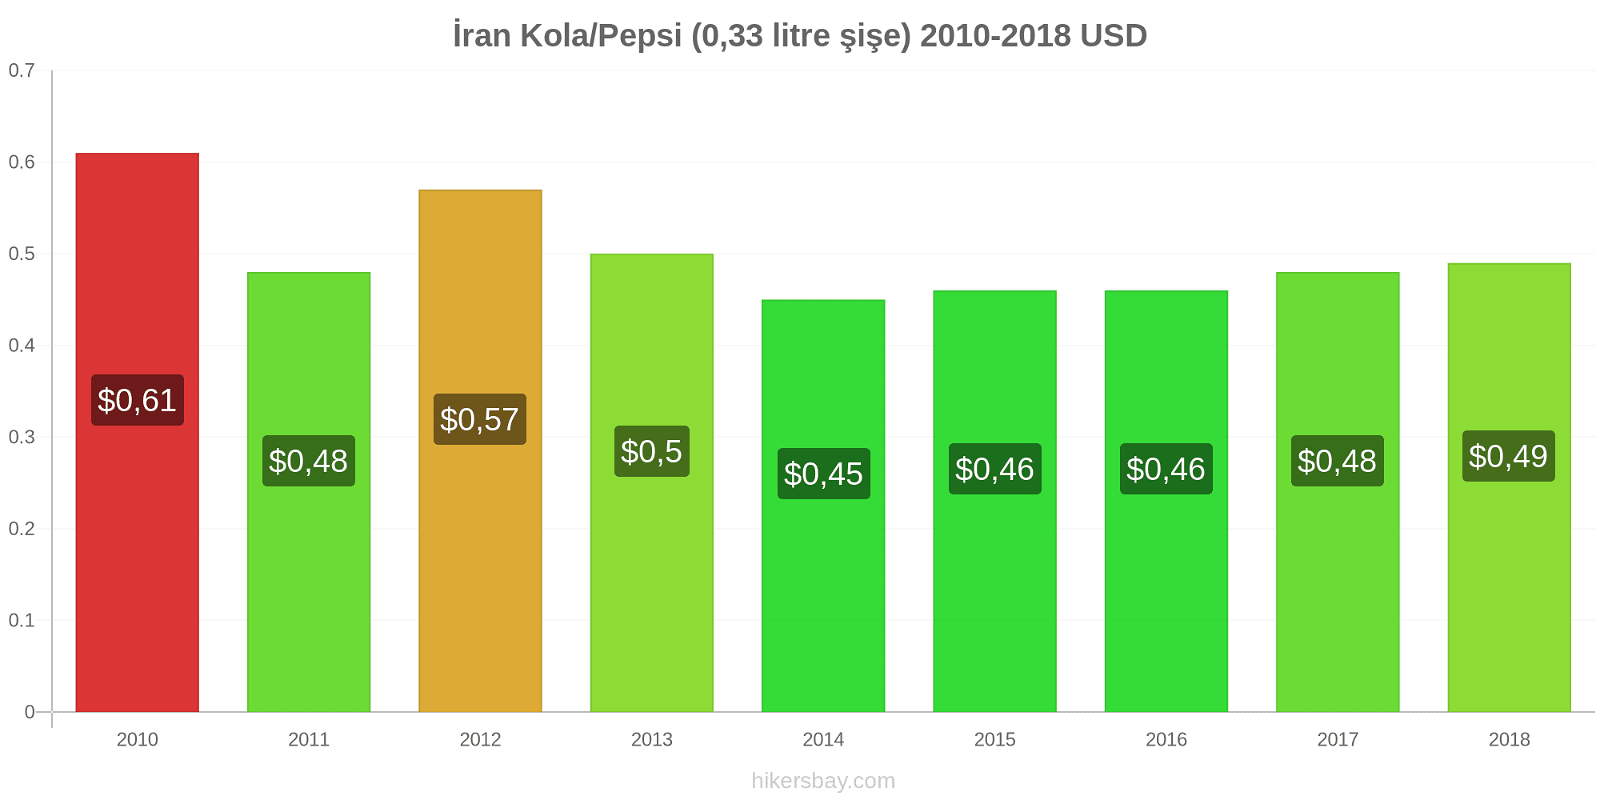 İran fiyat değişiklikleri Kola/Pepsi (0.33 litre şişe) hikersbay.com